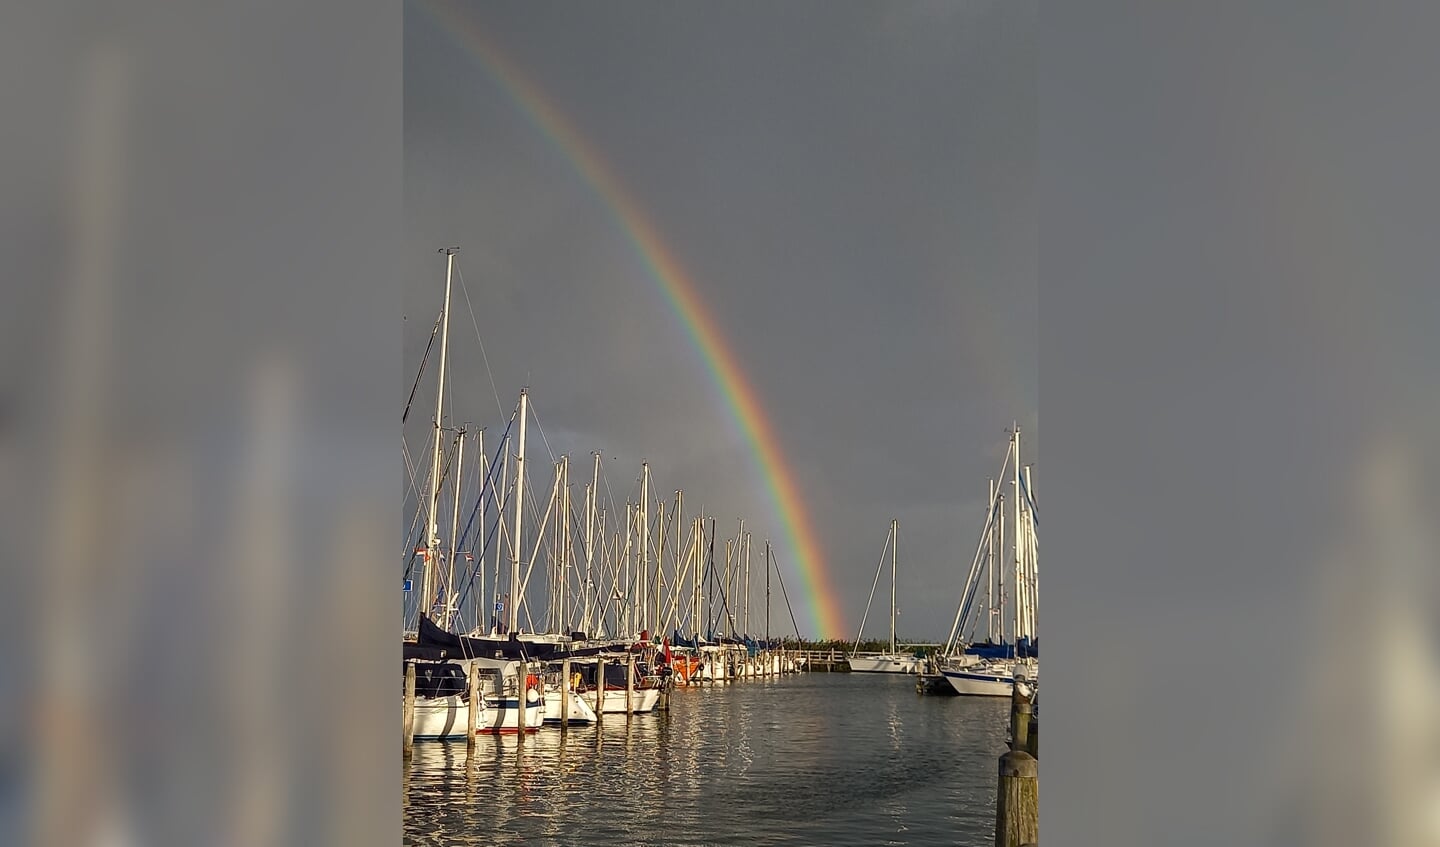 De foto is genomen in de jachthaven in Enkhuizen afgelopen week, waar we 2 nachten lagen tijdens onze zeiltrip vanuit Nijkerk. De prachtige regenboog zorgde ervoor dat veel mensen uit hun bootje kwamen. 